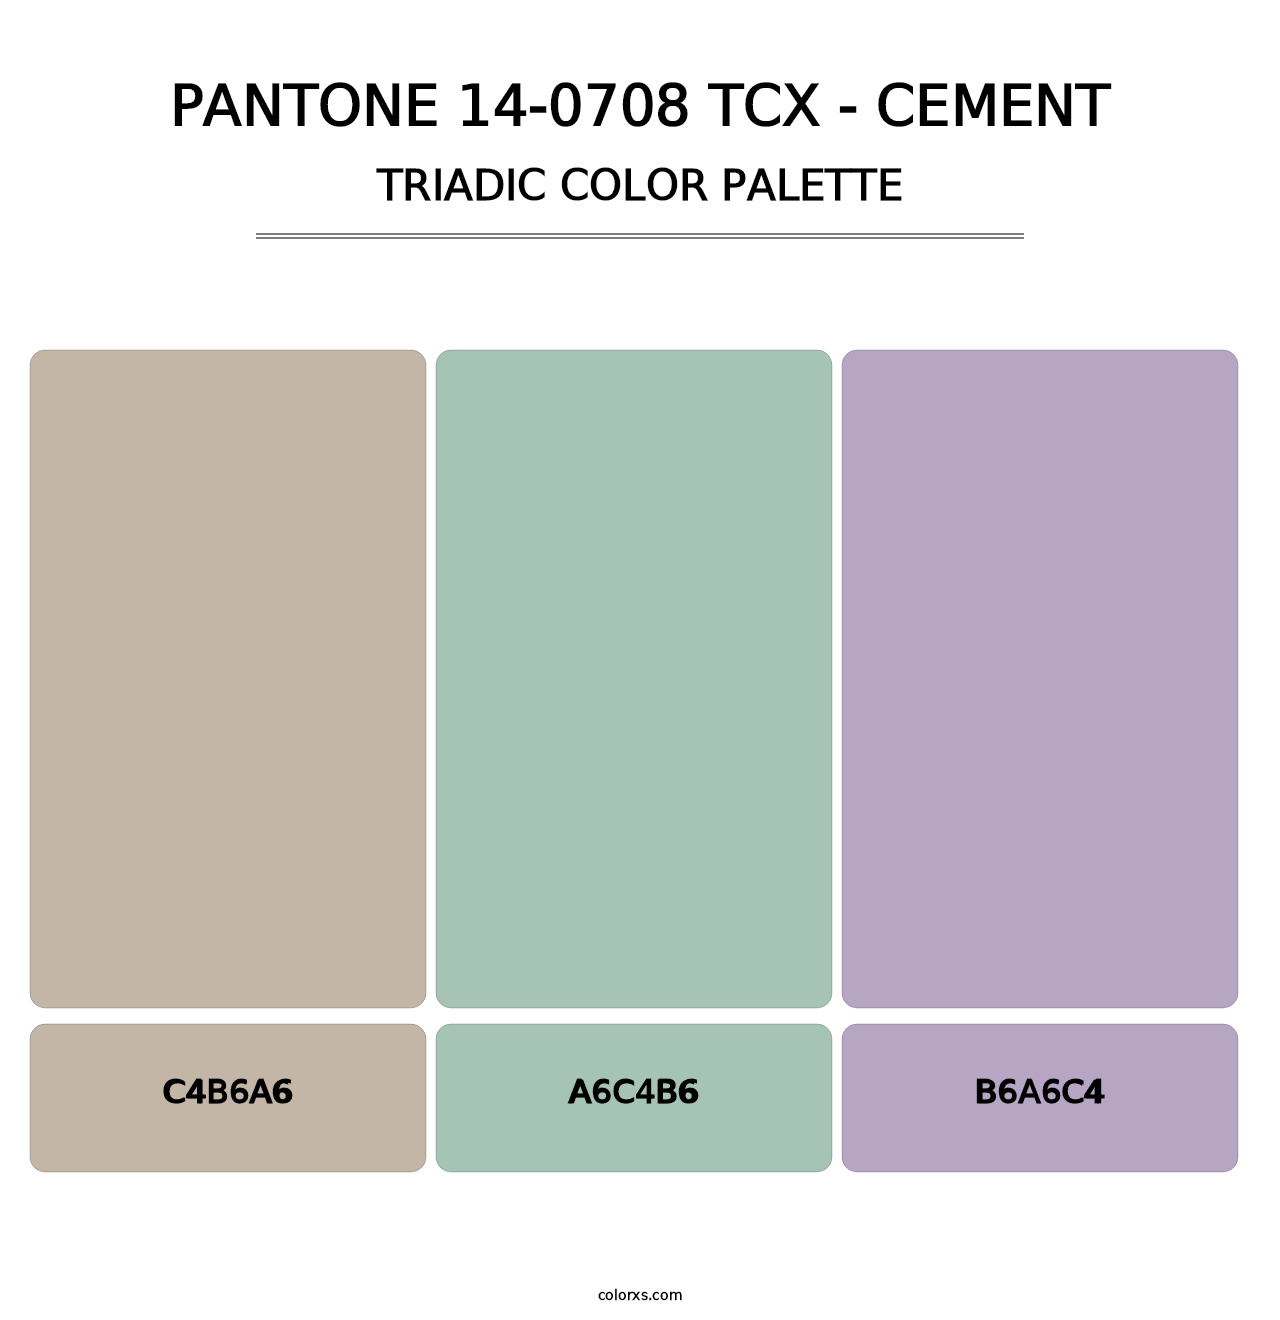 PANTONE 14-0708 TCX - Cement - Triadic Color Palette